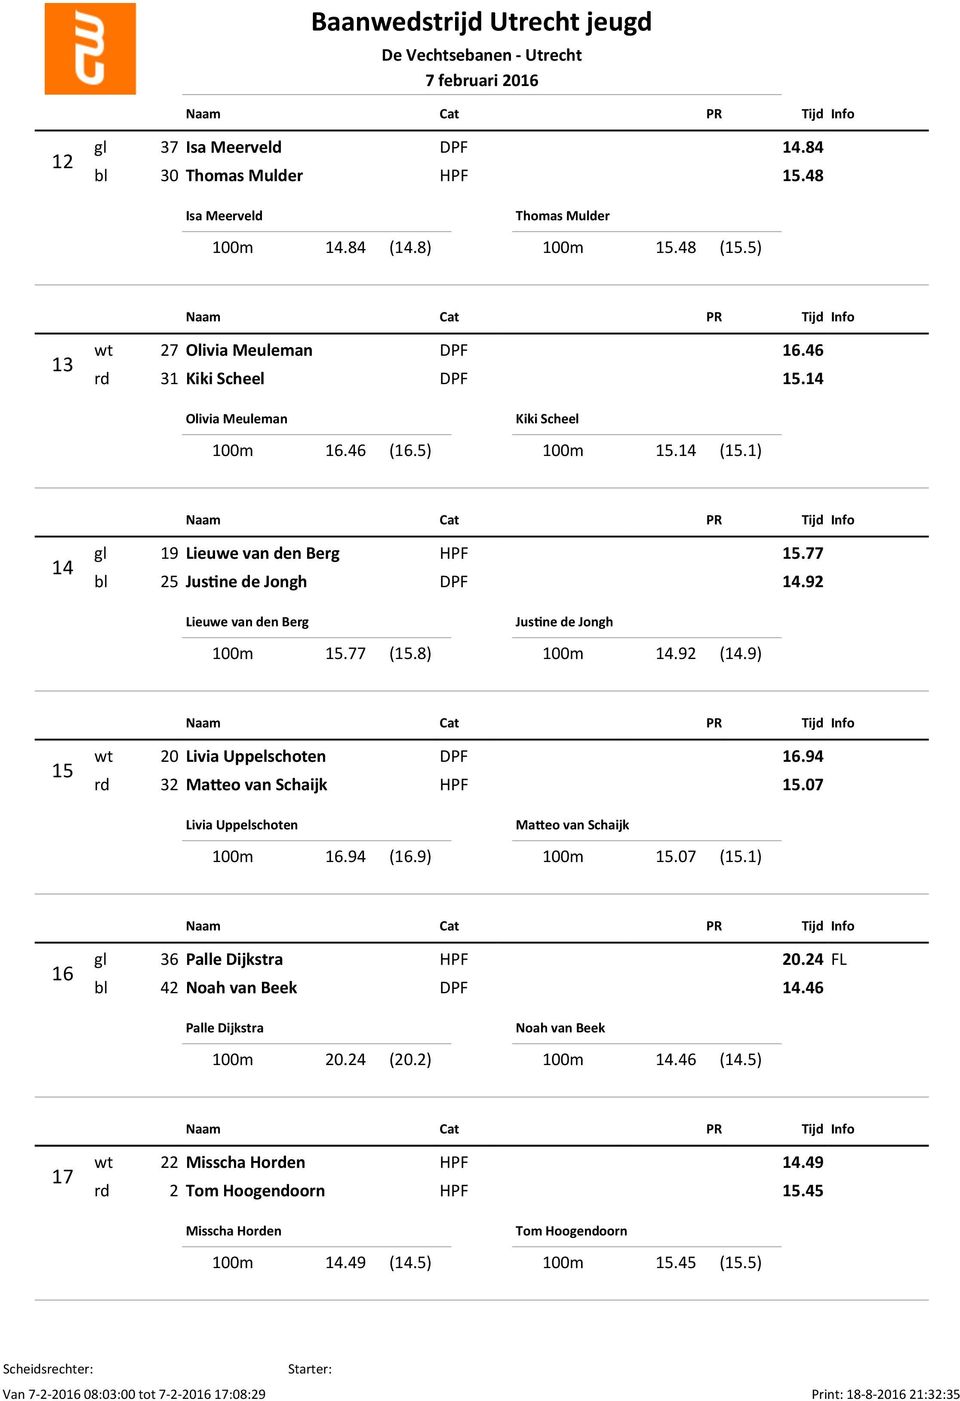 92 (14.9) 15 wt 20 Livia Uppelschoten DPF 16.94 rd 32 Ma eo van Schaijk HPF 15.07 Livia Uppelschoten 100m 16.94 (16.9) Ma eo van Schaijk 100m 15.07 (15.1) 16 gl 36 Palle Dijkstra HPF 20.